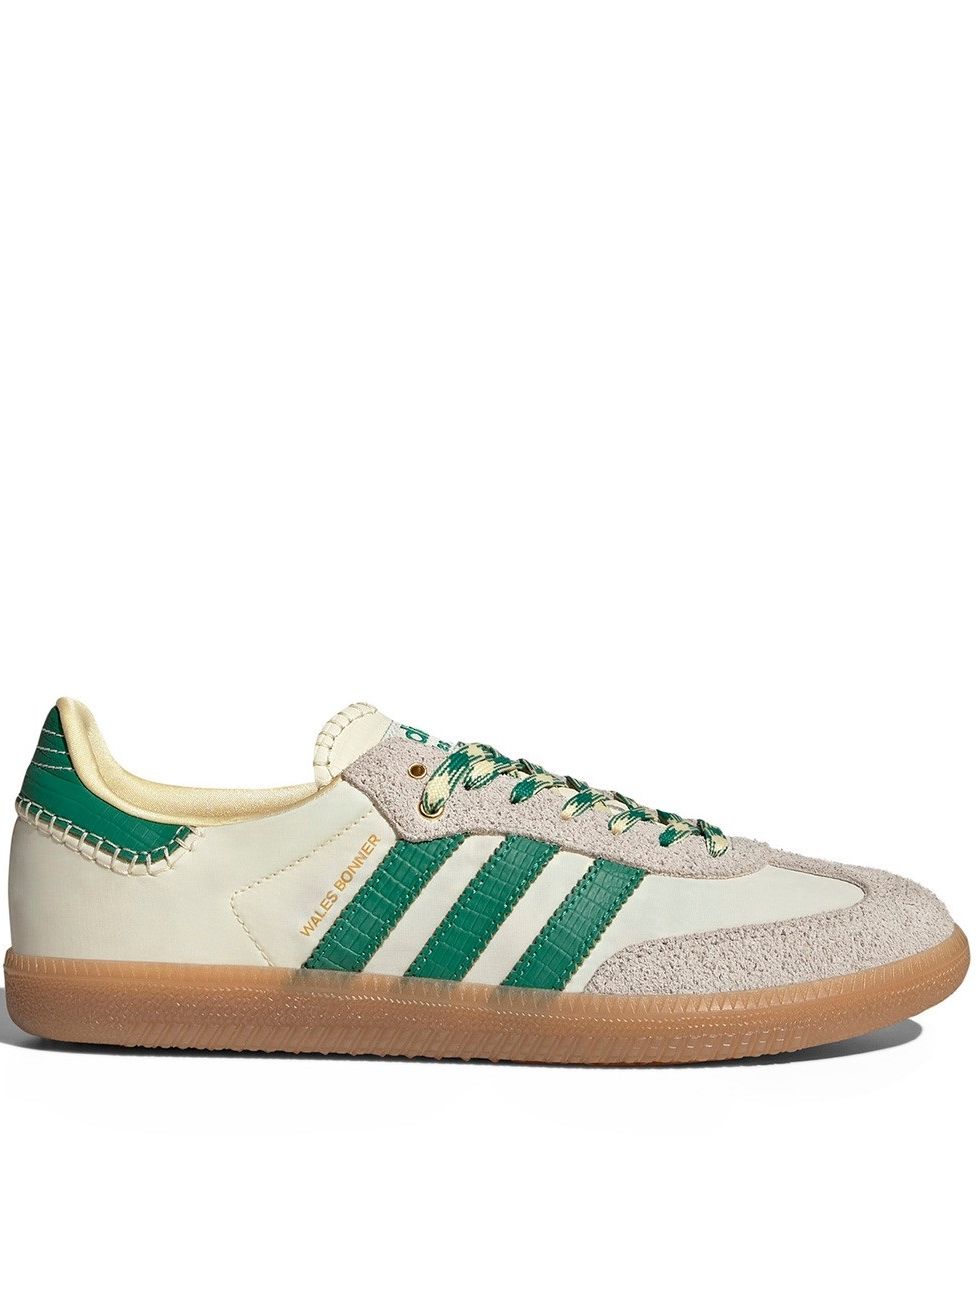 Кроссовки Adidas Samba & Wales Bonner, белые с зеленым